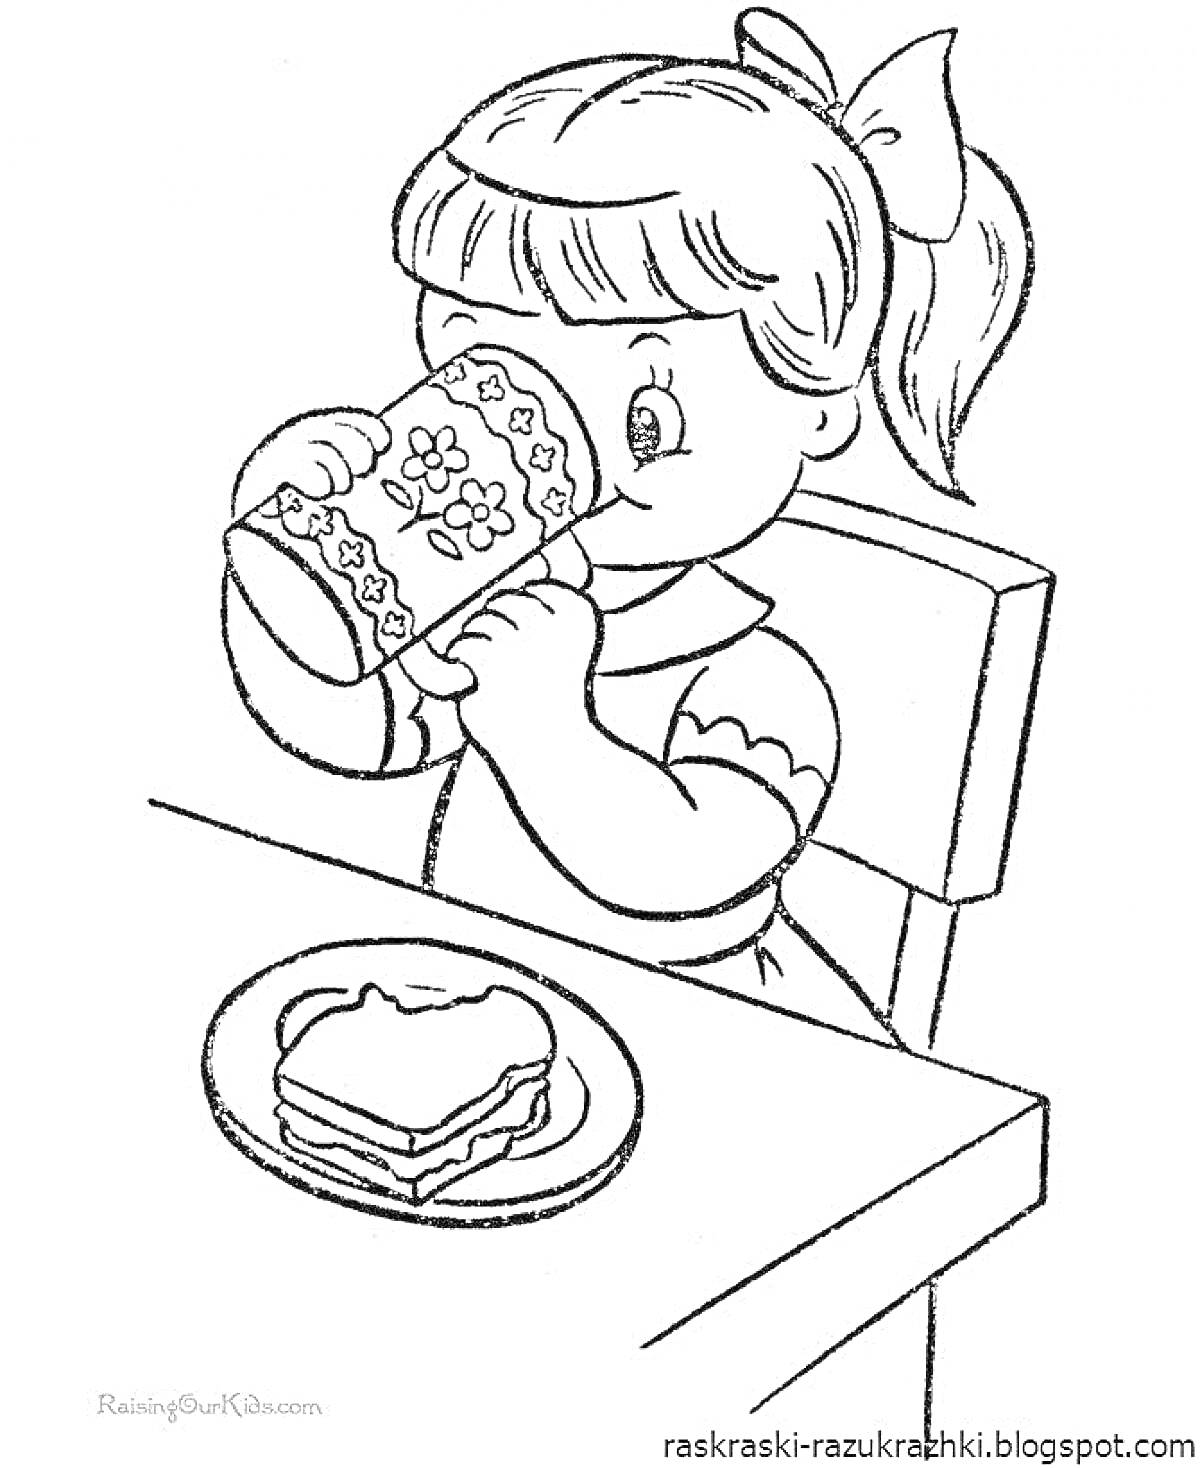 Раскраска Девочка, пьющая из кружки, с тарелкой на столе, на которой лежат бутерброды